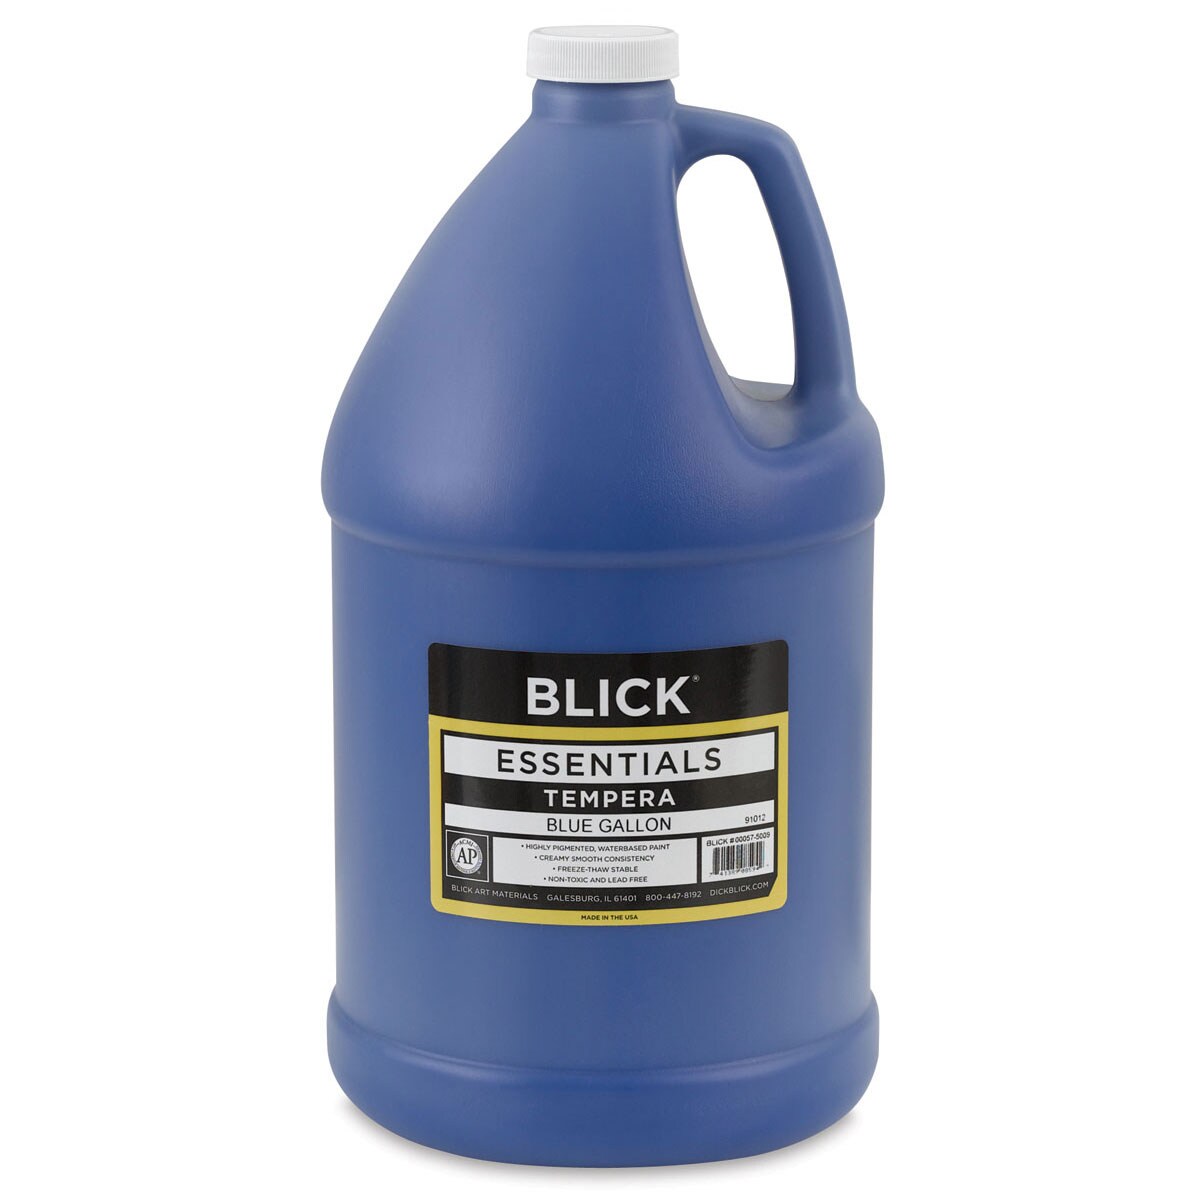 Blick Essentials Tempera - Blue, Gallon